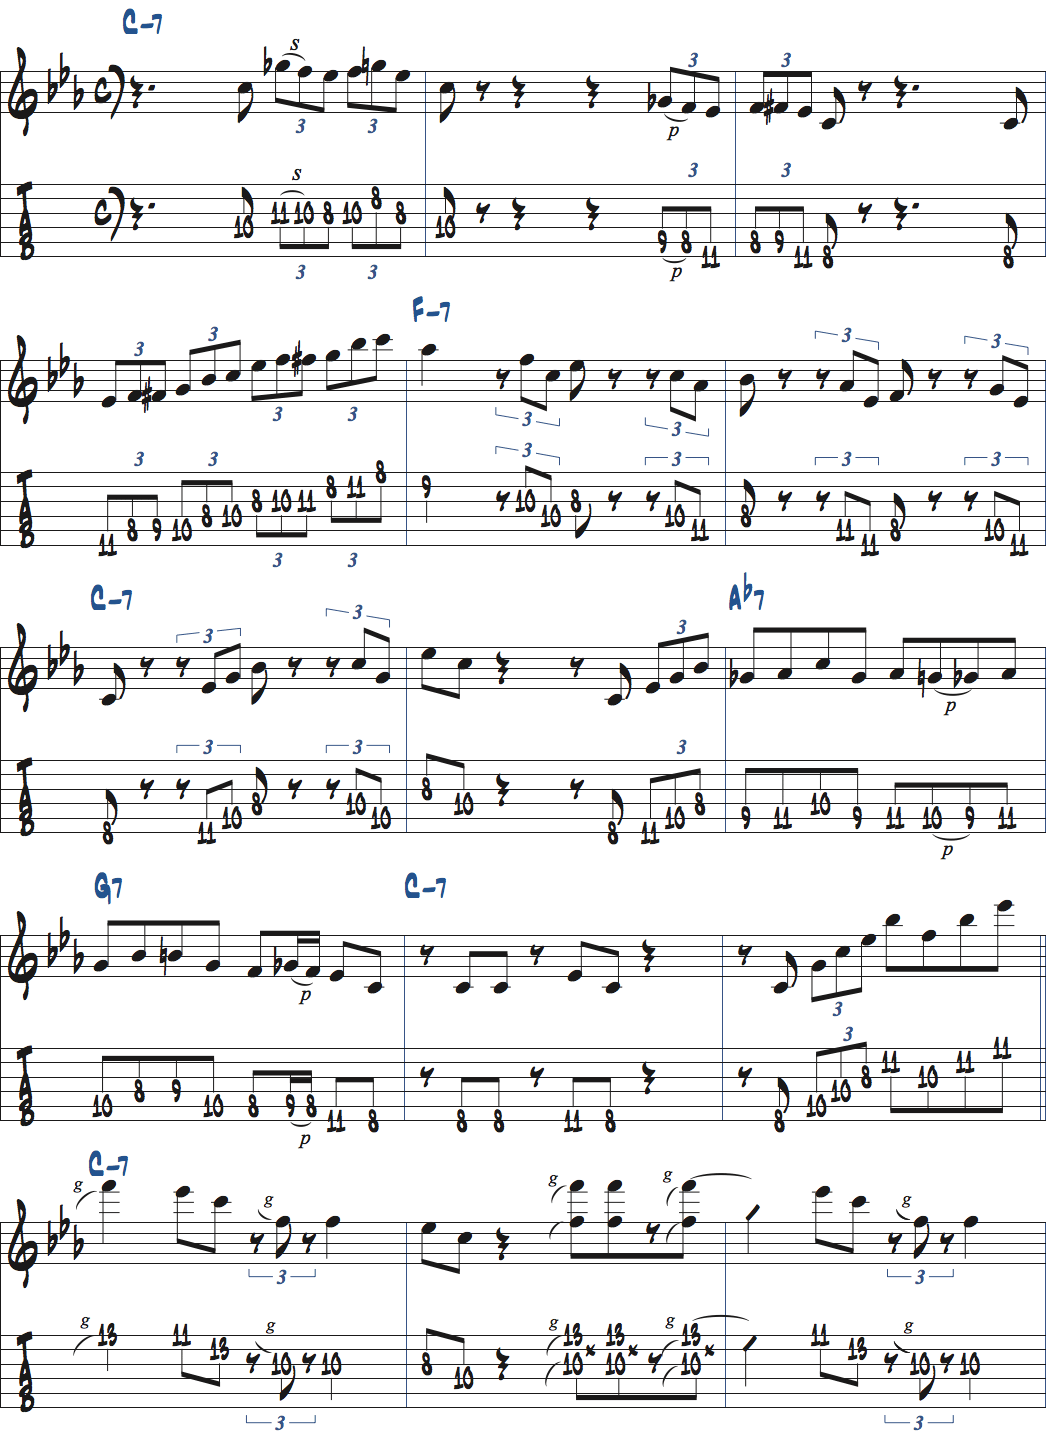 マイナーペンタ+b5とコードトーン、リックを使ったアドリブ例楽譜ページ1